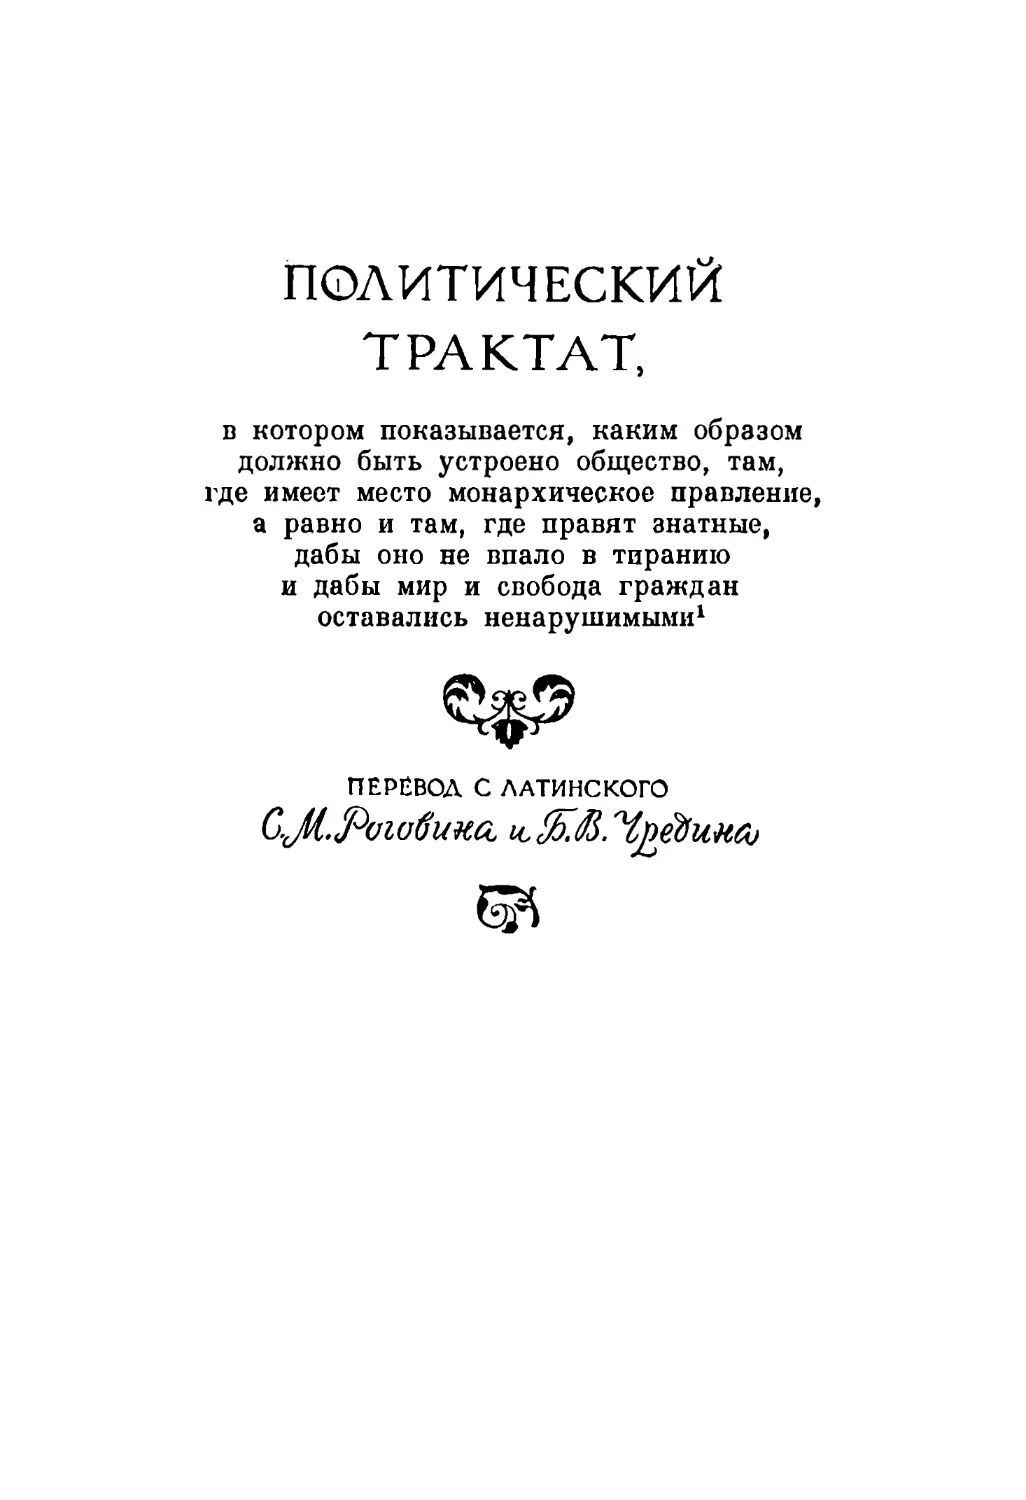 Политический трактат. Перевод с латинского С. М. Роговина и Б. В. Чредина